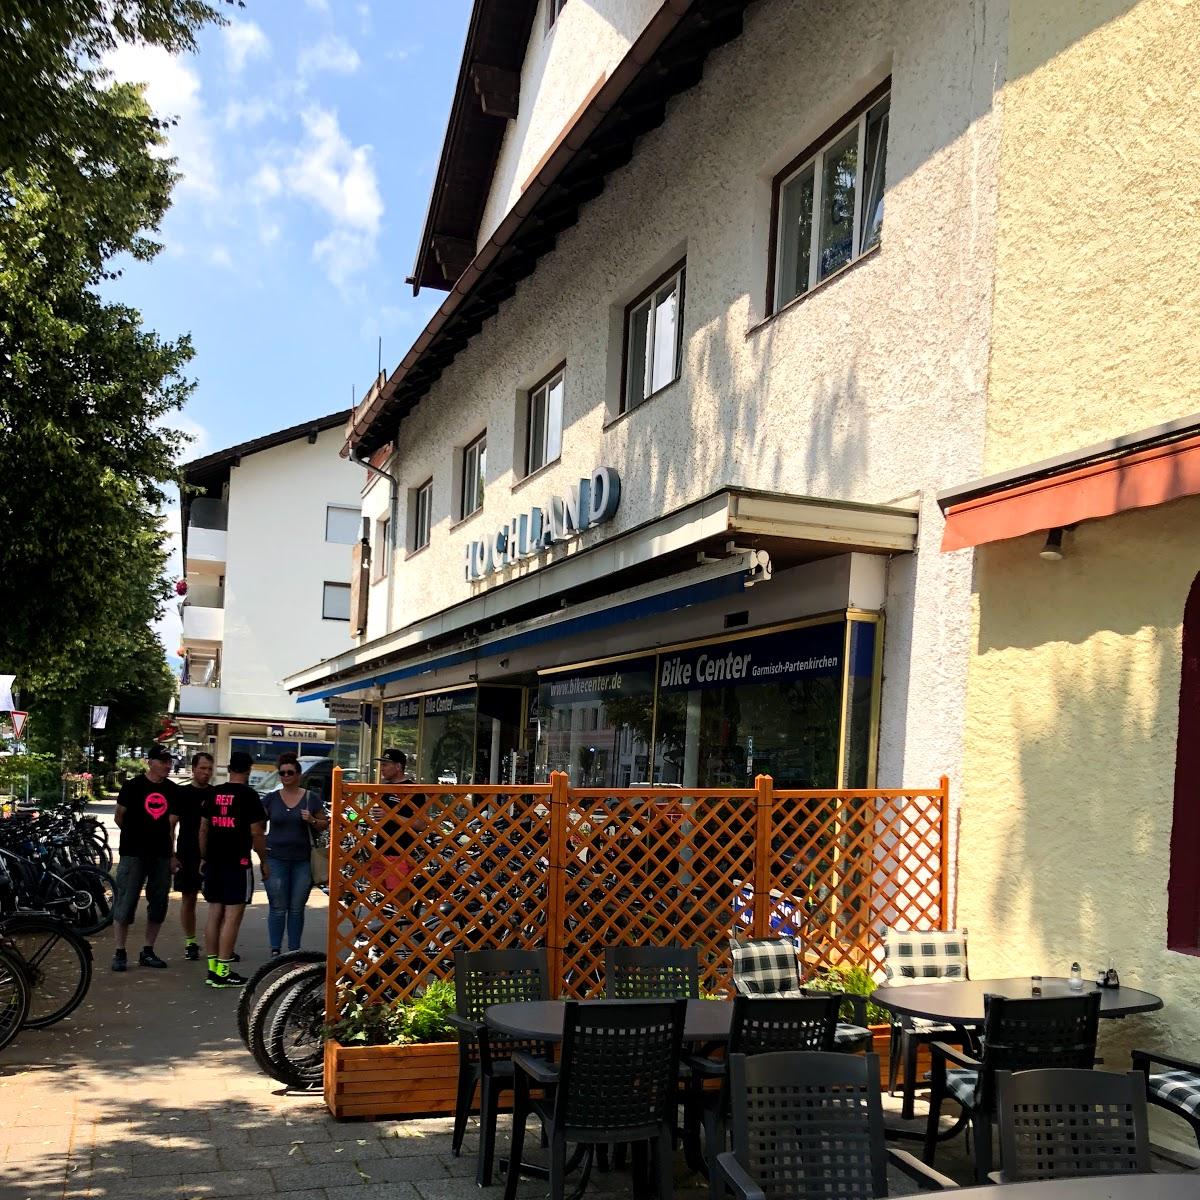 Restaurant "Ludwigshof Kebap Steak Burger" in Garmisch-Partenkirchen